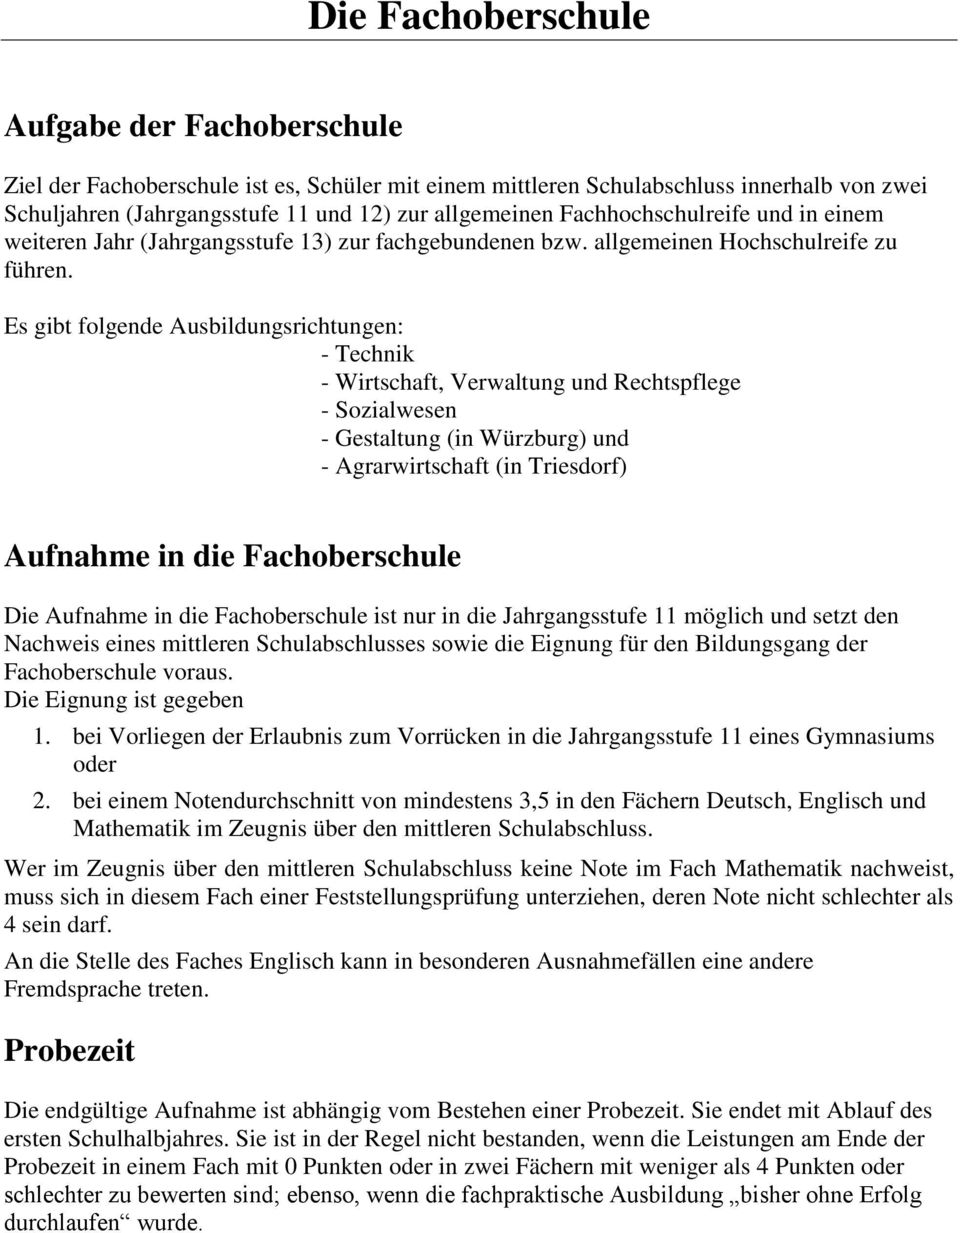 Es gibt folgende Ausbildungsrichtungen: - Technik - Wirtschaft, Verwaltung und Rechtspflege - Sozialwesen - Gestaltung (in Würzburg) und - Agrarwirtschaft (in Triesdorf) Aufnahme in die